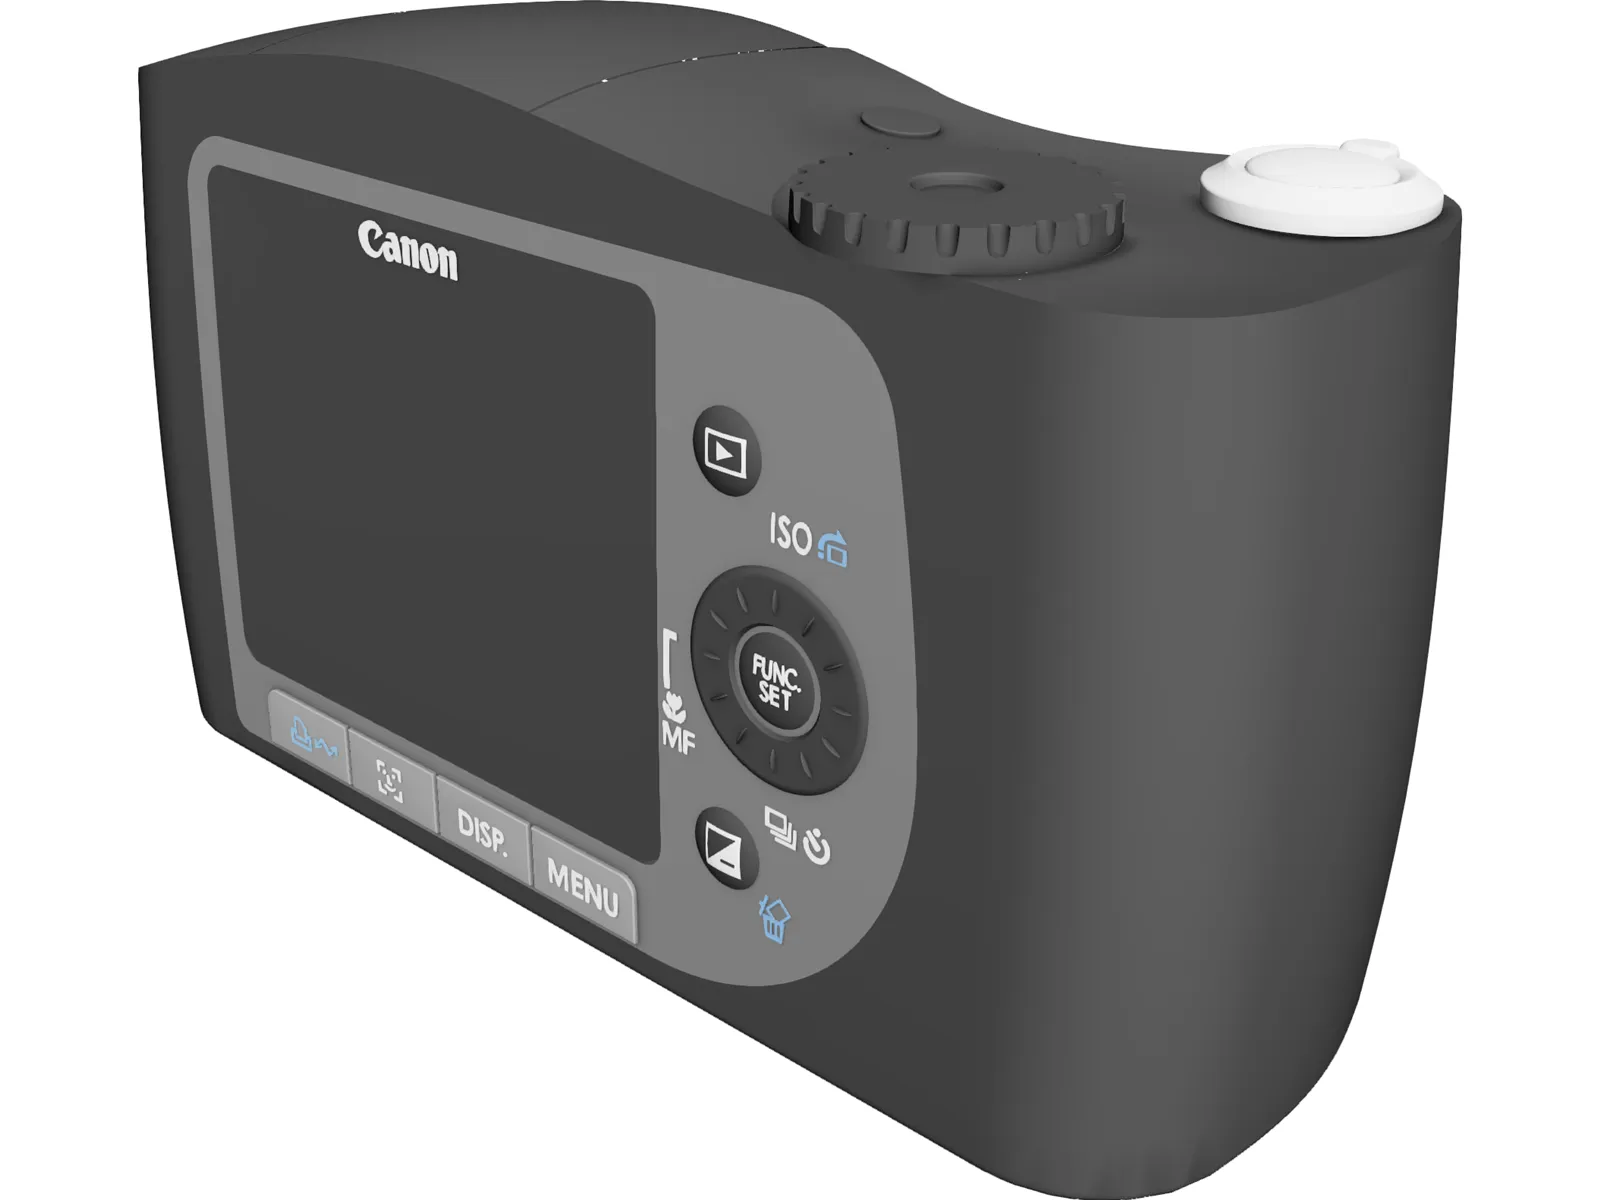 Canon SX120 IS Powershot 3D Model